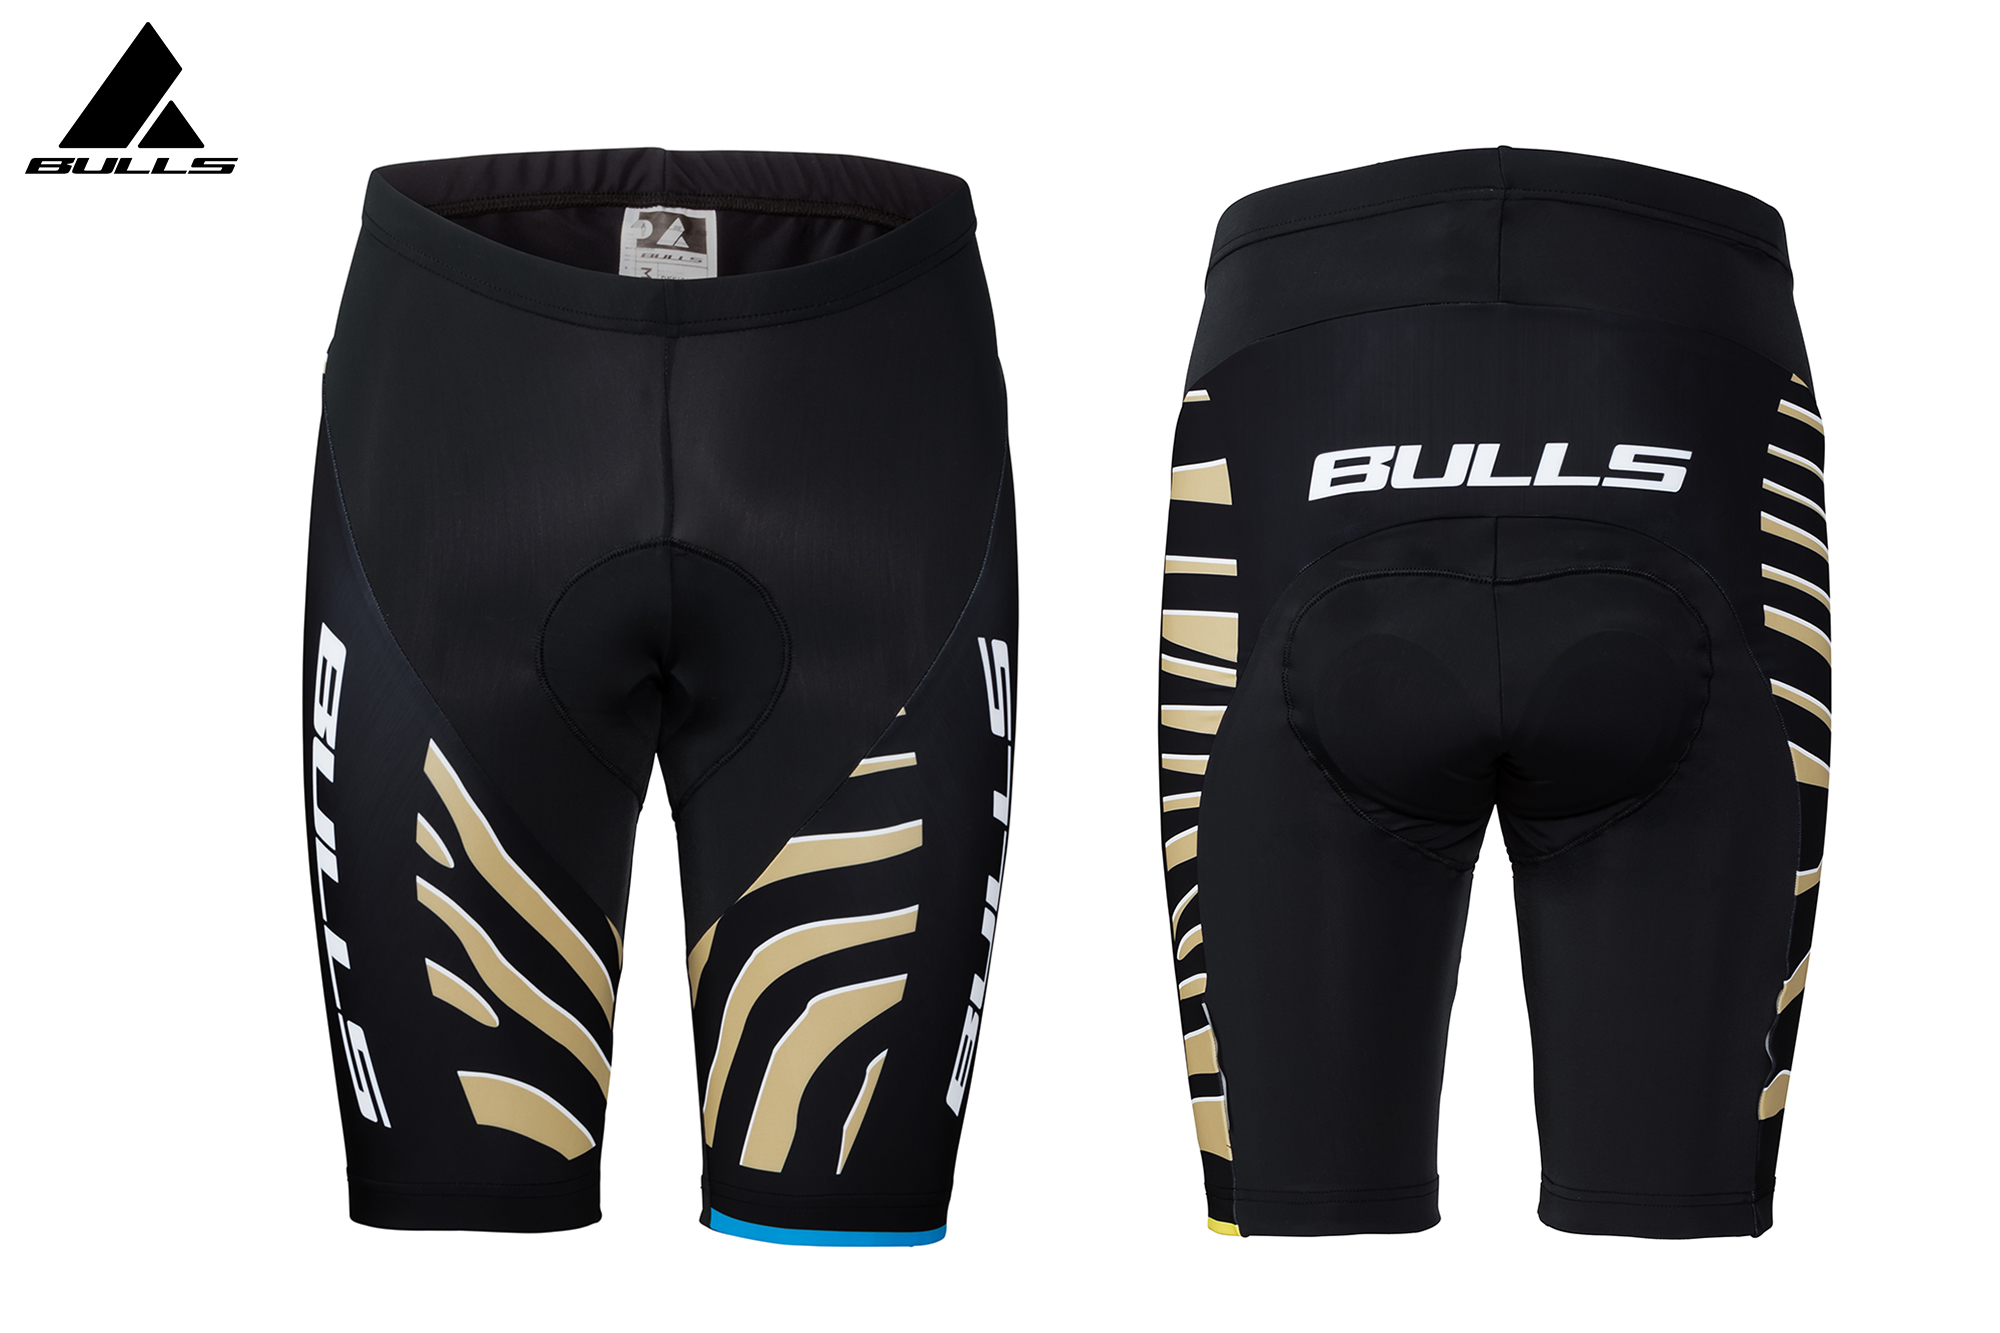 BULLS Team Shorts - zebra gold - 2021 